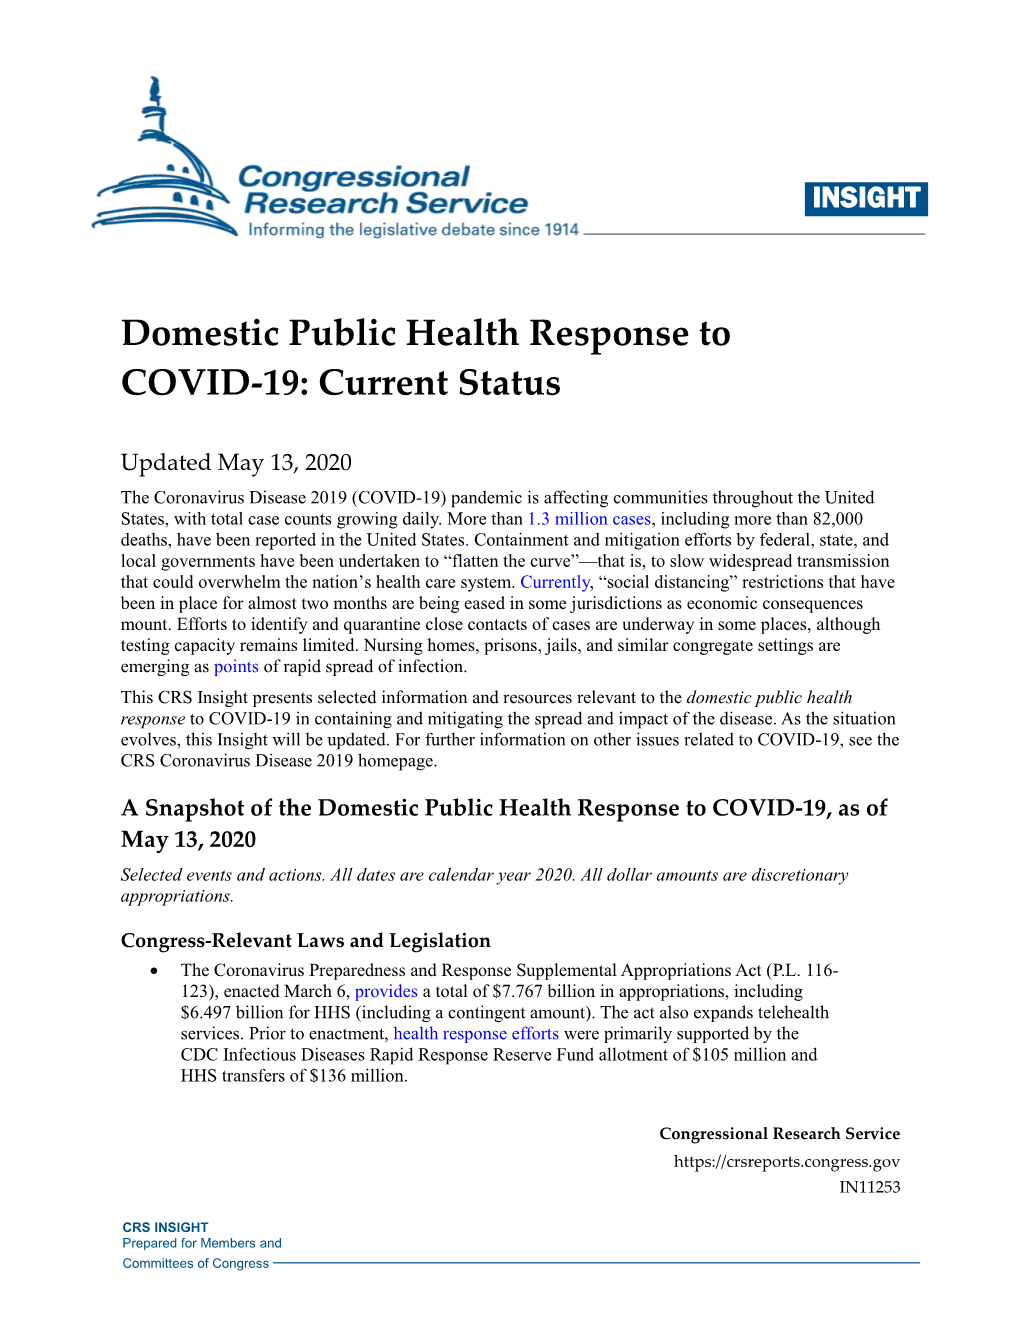 Domestic Public Health Response to COVID˚19